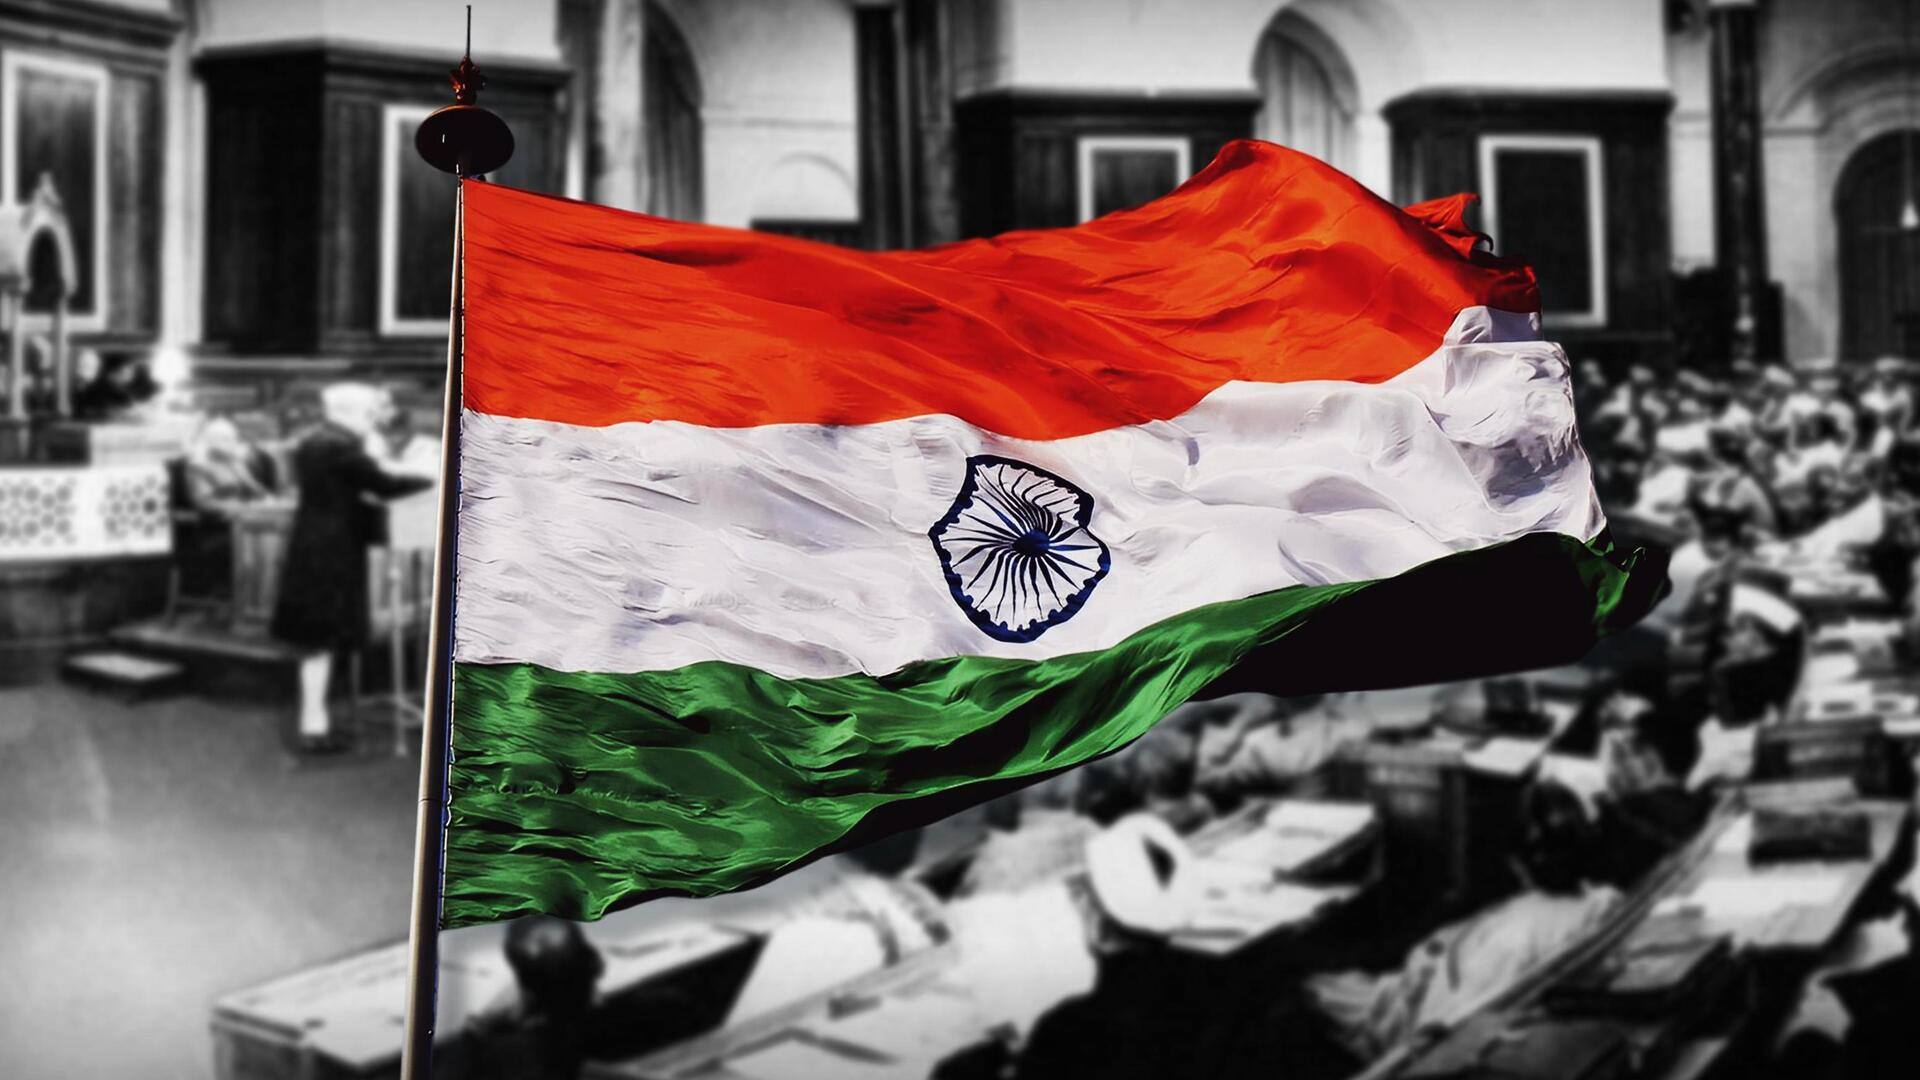 #NewsBytesExplainer: 'इंडिया, अर्थात भारत', संविधान सभा ने कैसे तय किया था देश का नाम?